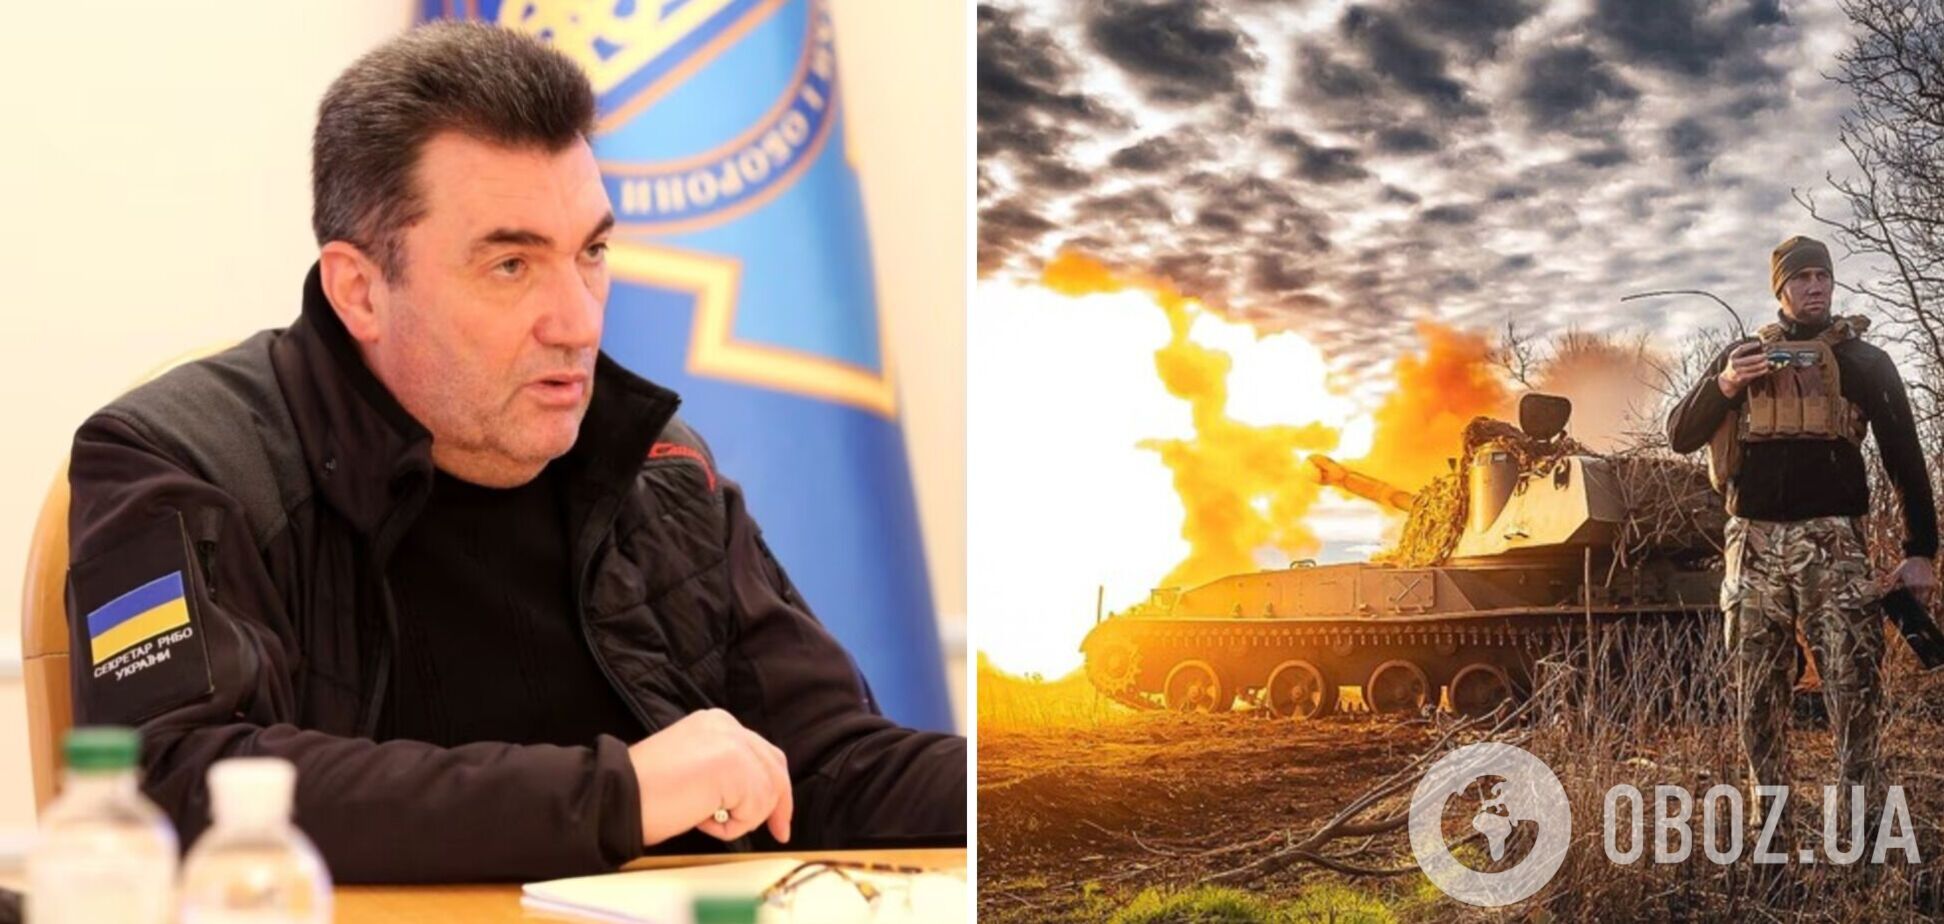 'Ситуация на фронте тяжелая, но на войне нет статики': Данилов заявил, что Украина найдет ответы на вызовы